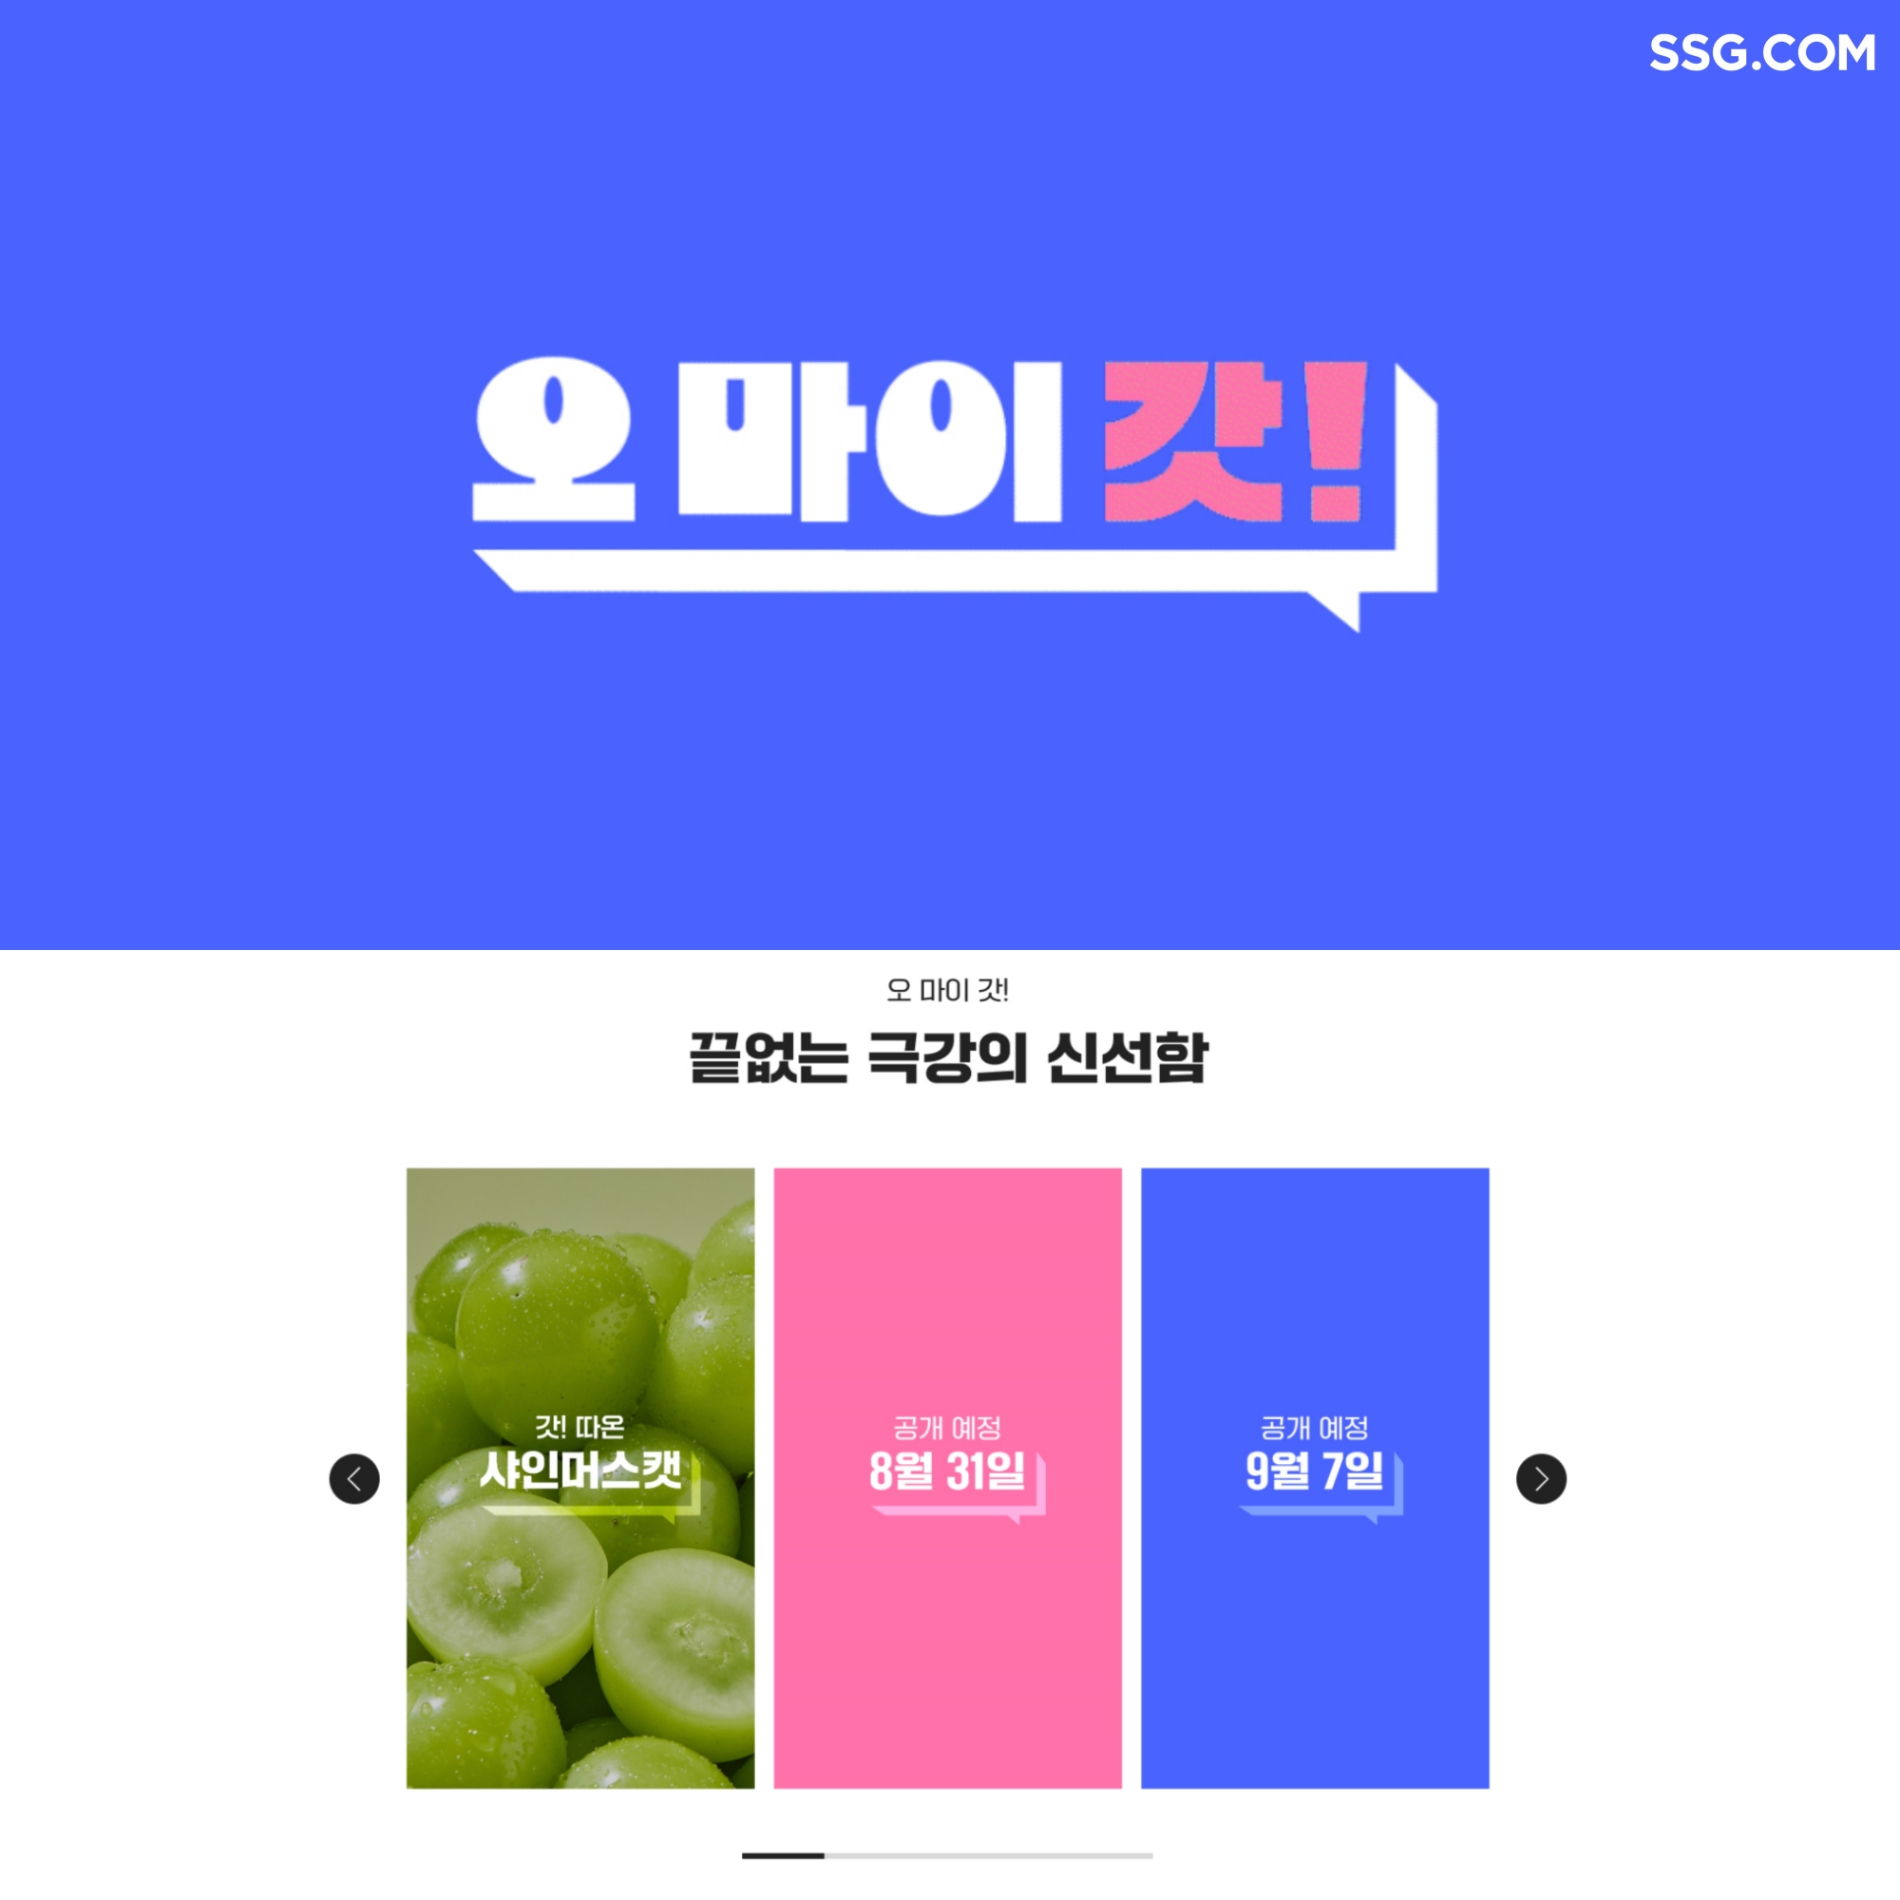 [생활경제 이슈] SSG닷컴 ‘오마이갓!신선’ 캠페인 시작 外